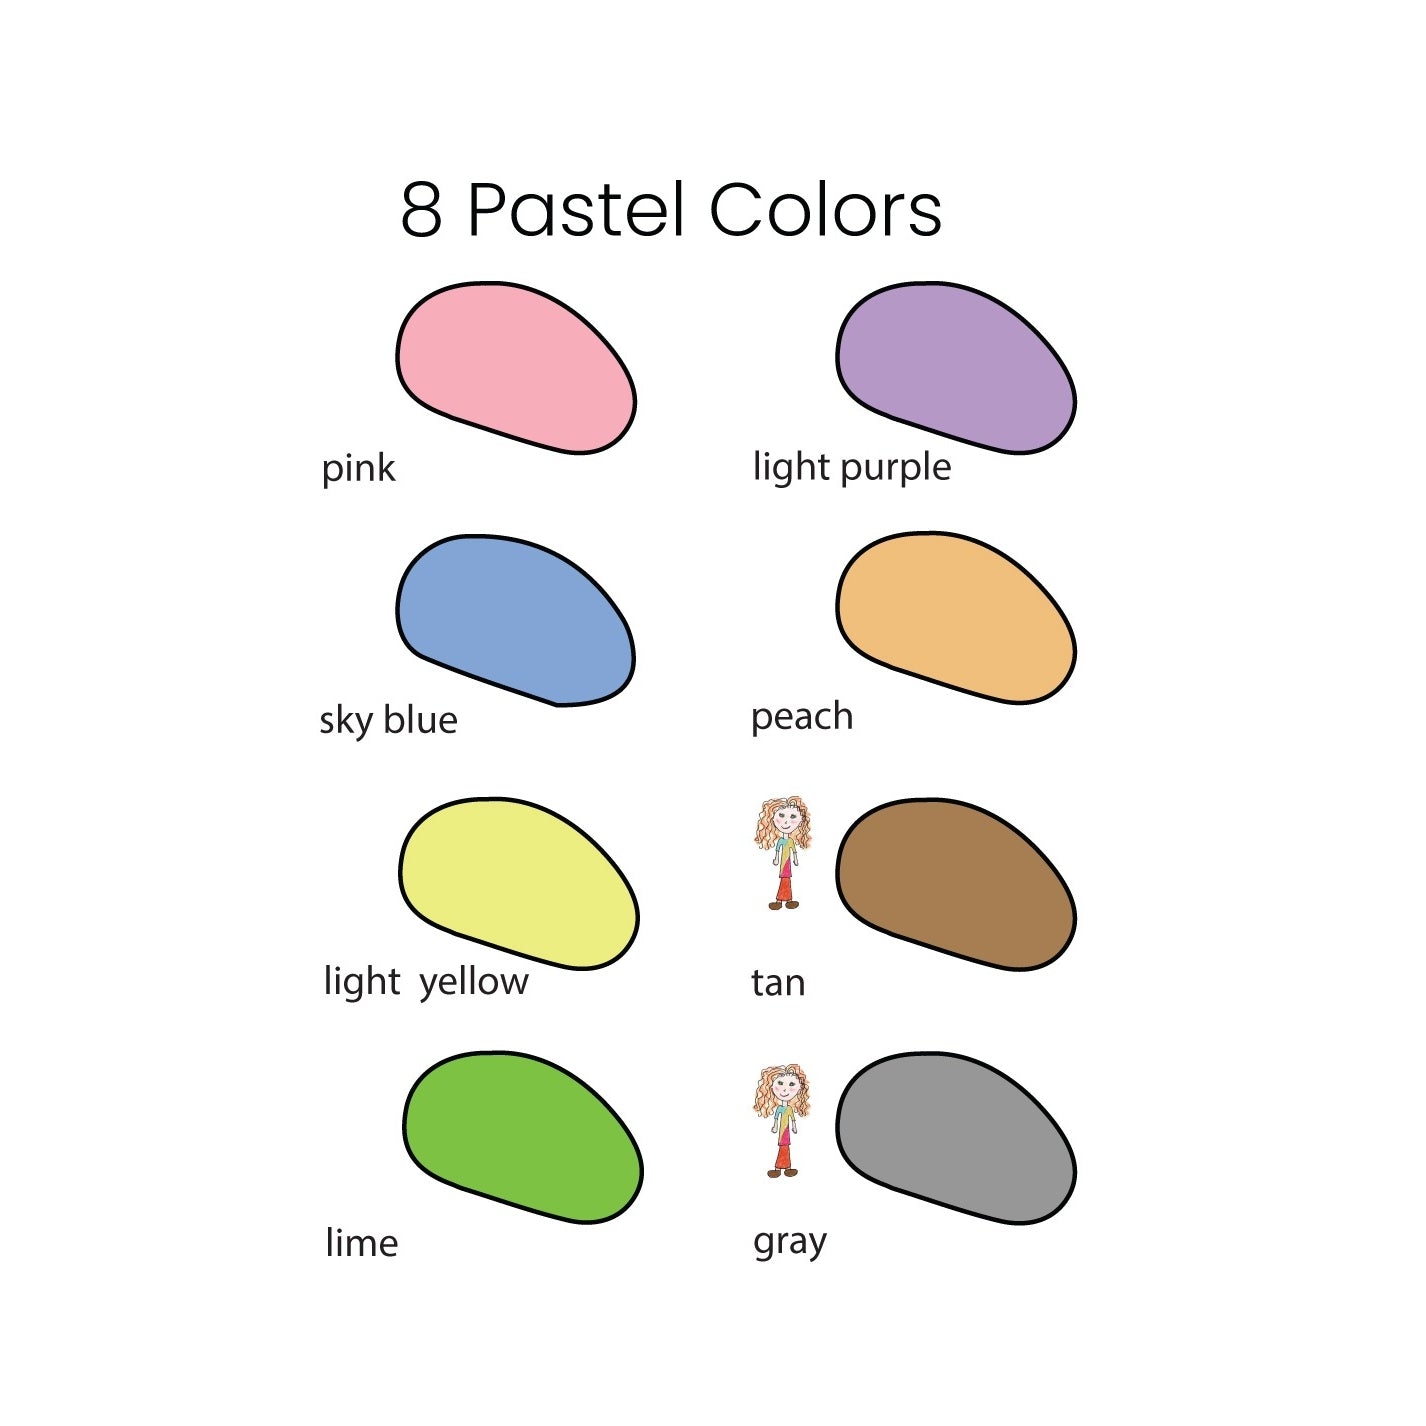 Crayon Rocks - 8 Colors - Little Goose Toys